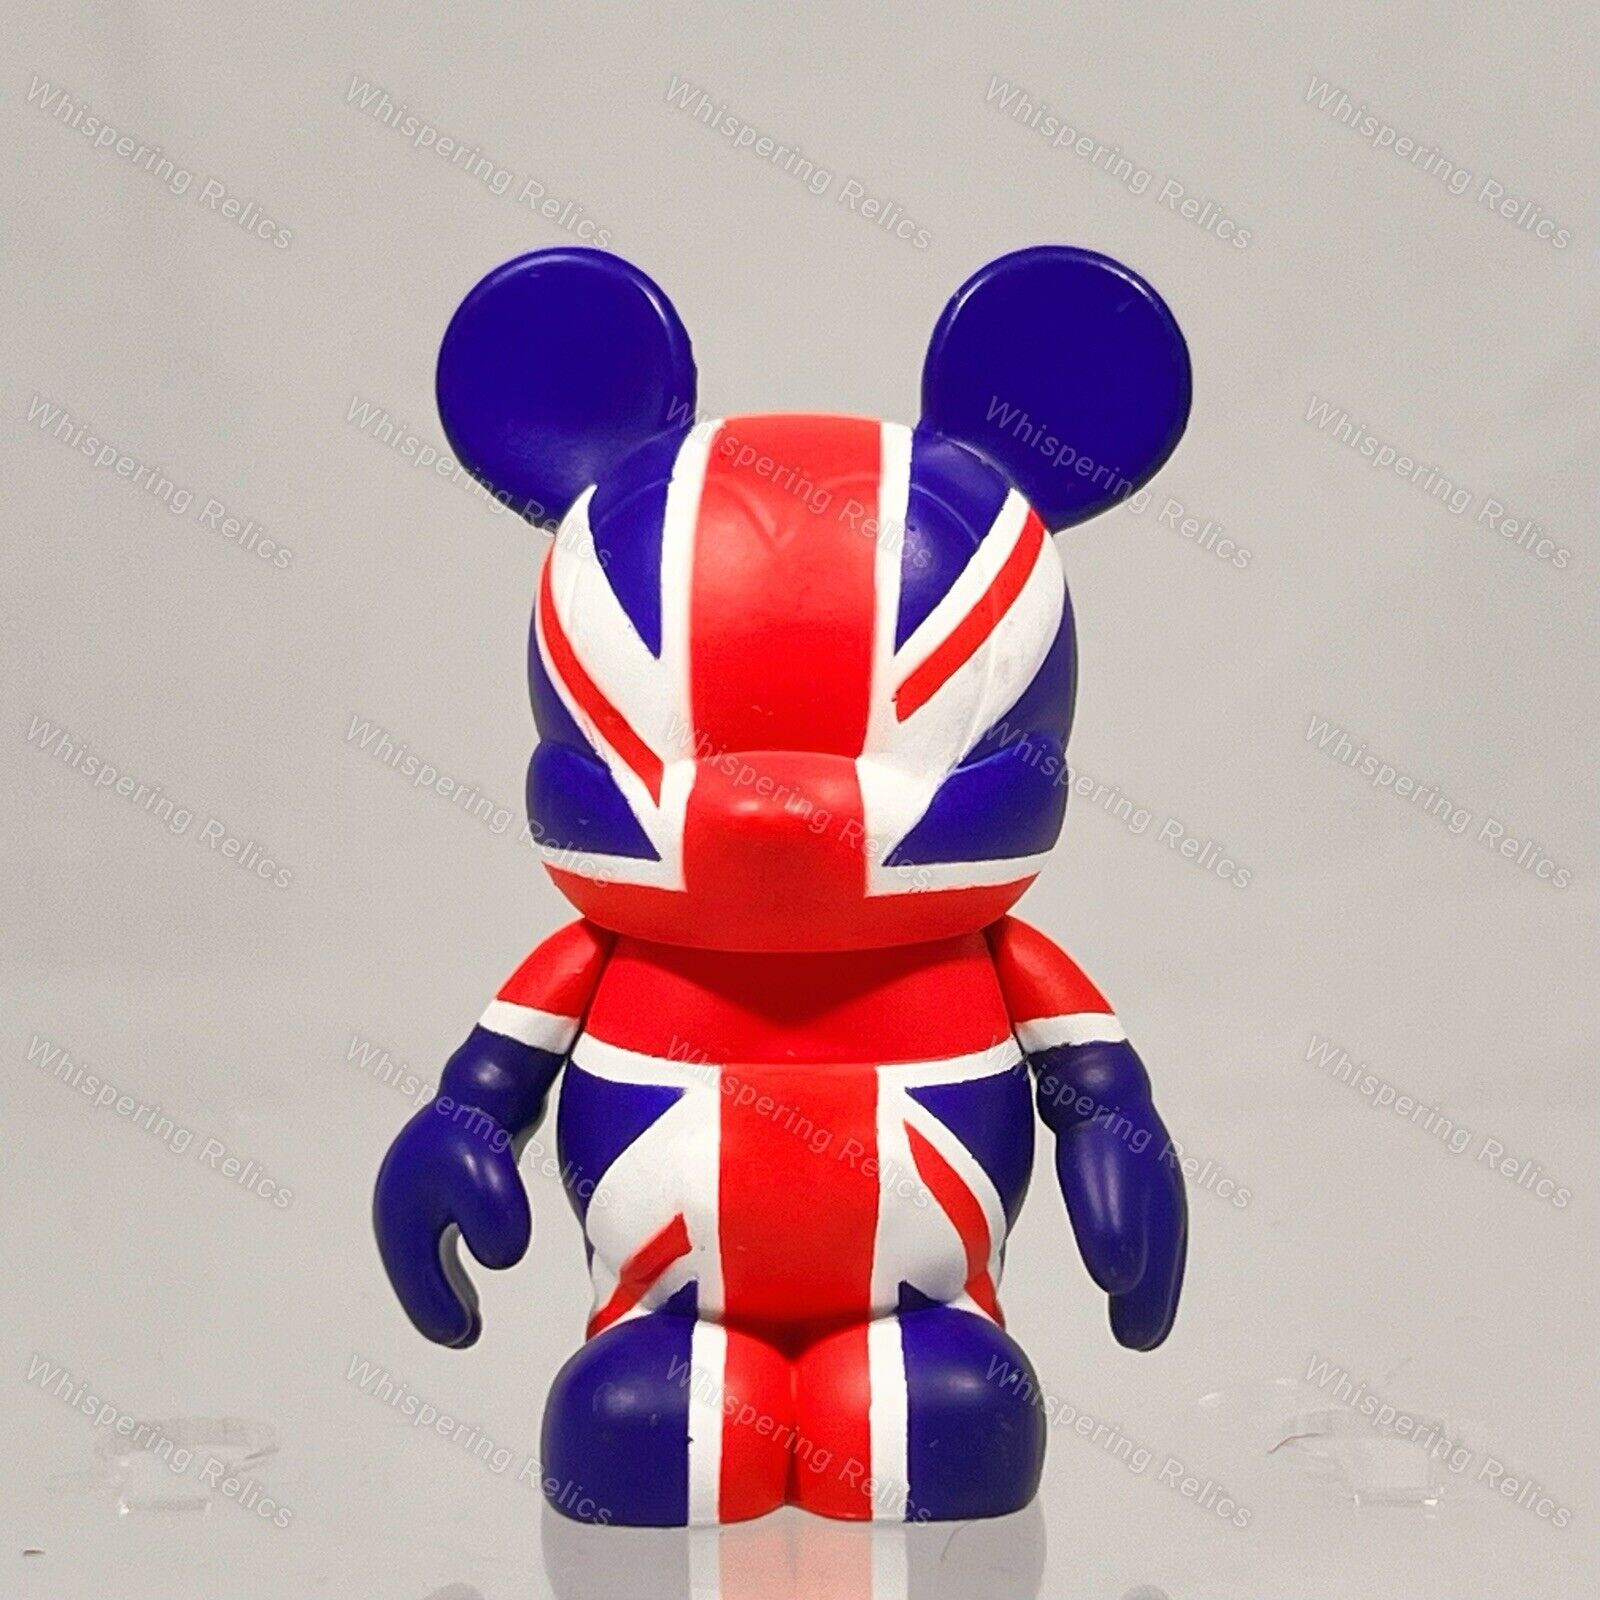 United Kingdom Flag Vinylmation Figure | Flag Series | Union Jack British Flag